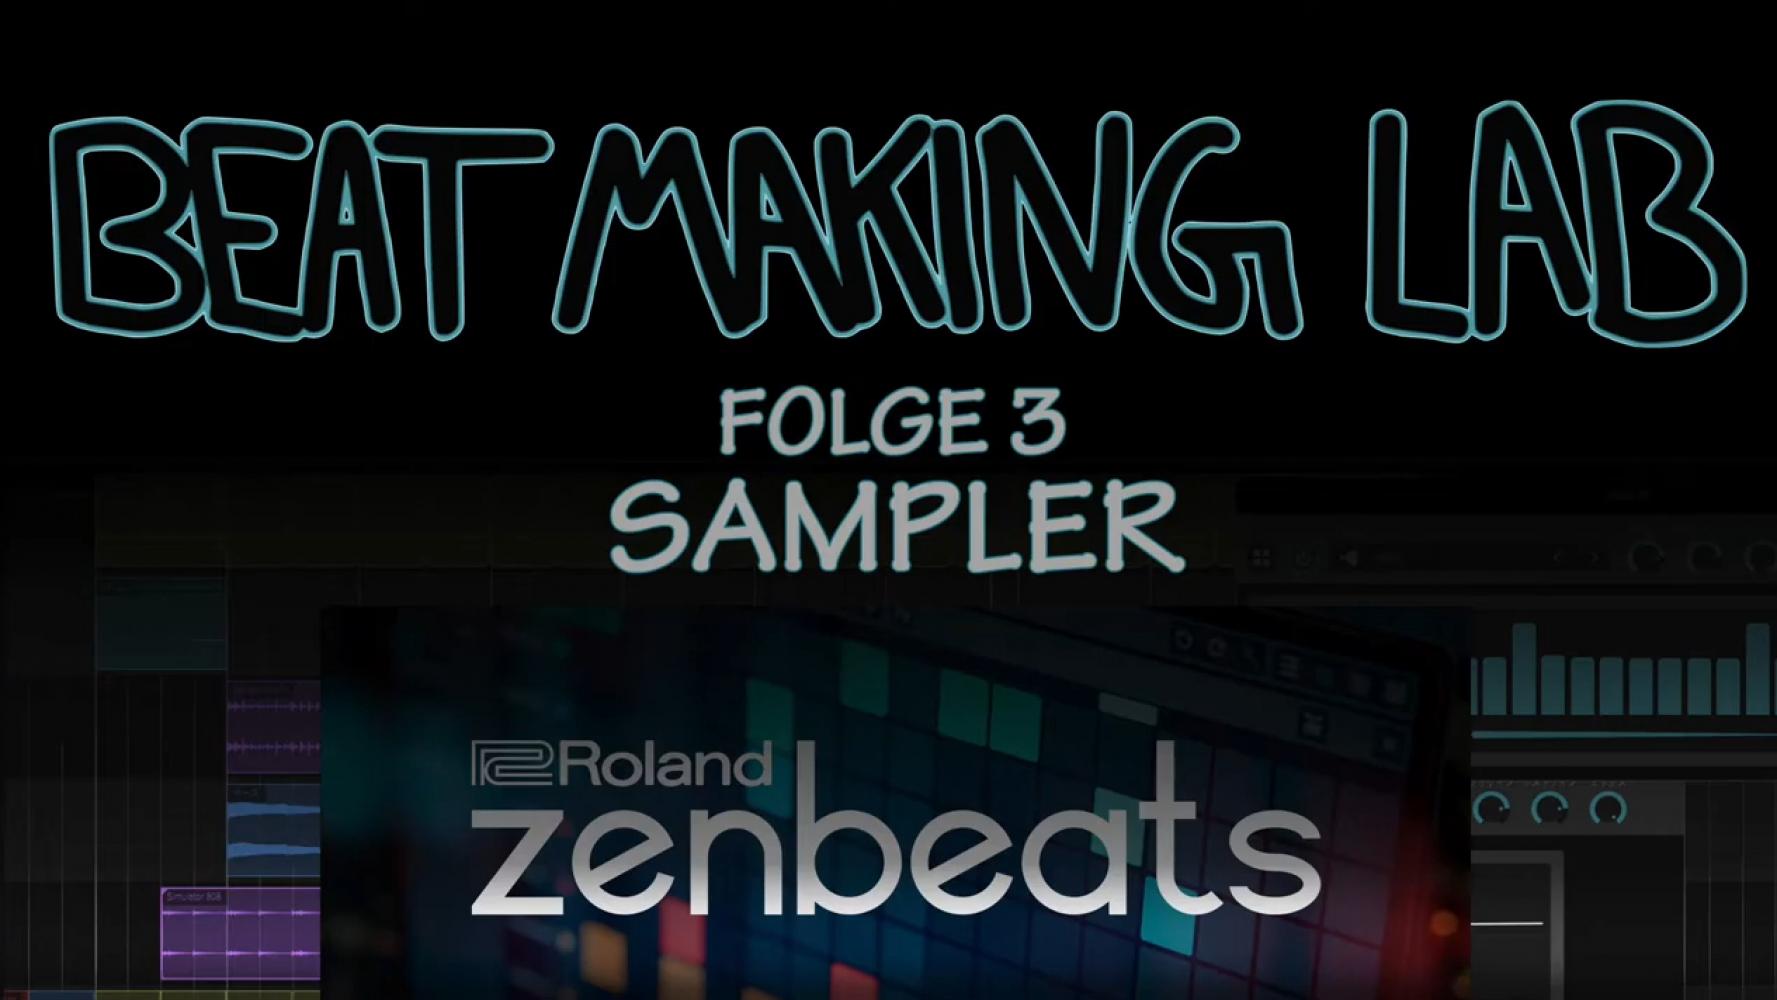 Bild zur Veranstaltung - edYo!cation 2020 - Beat Making Lab, Sampler